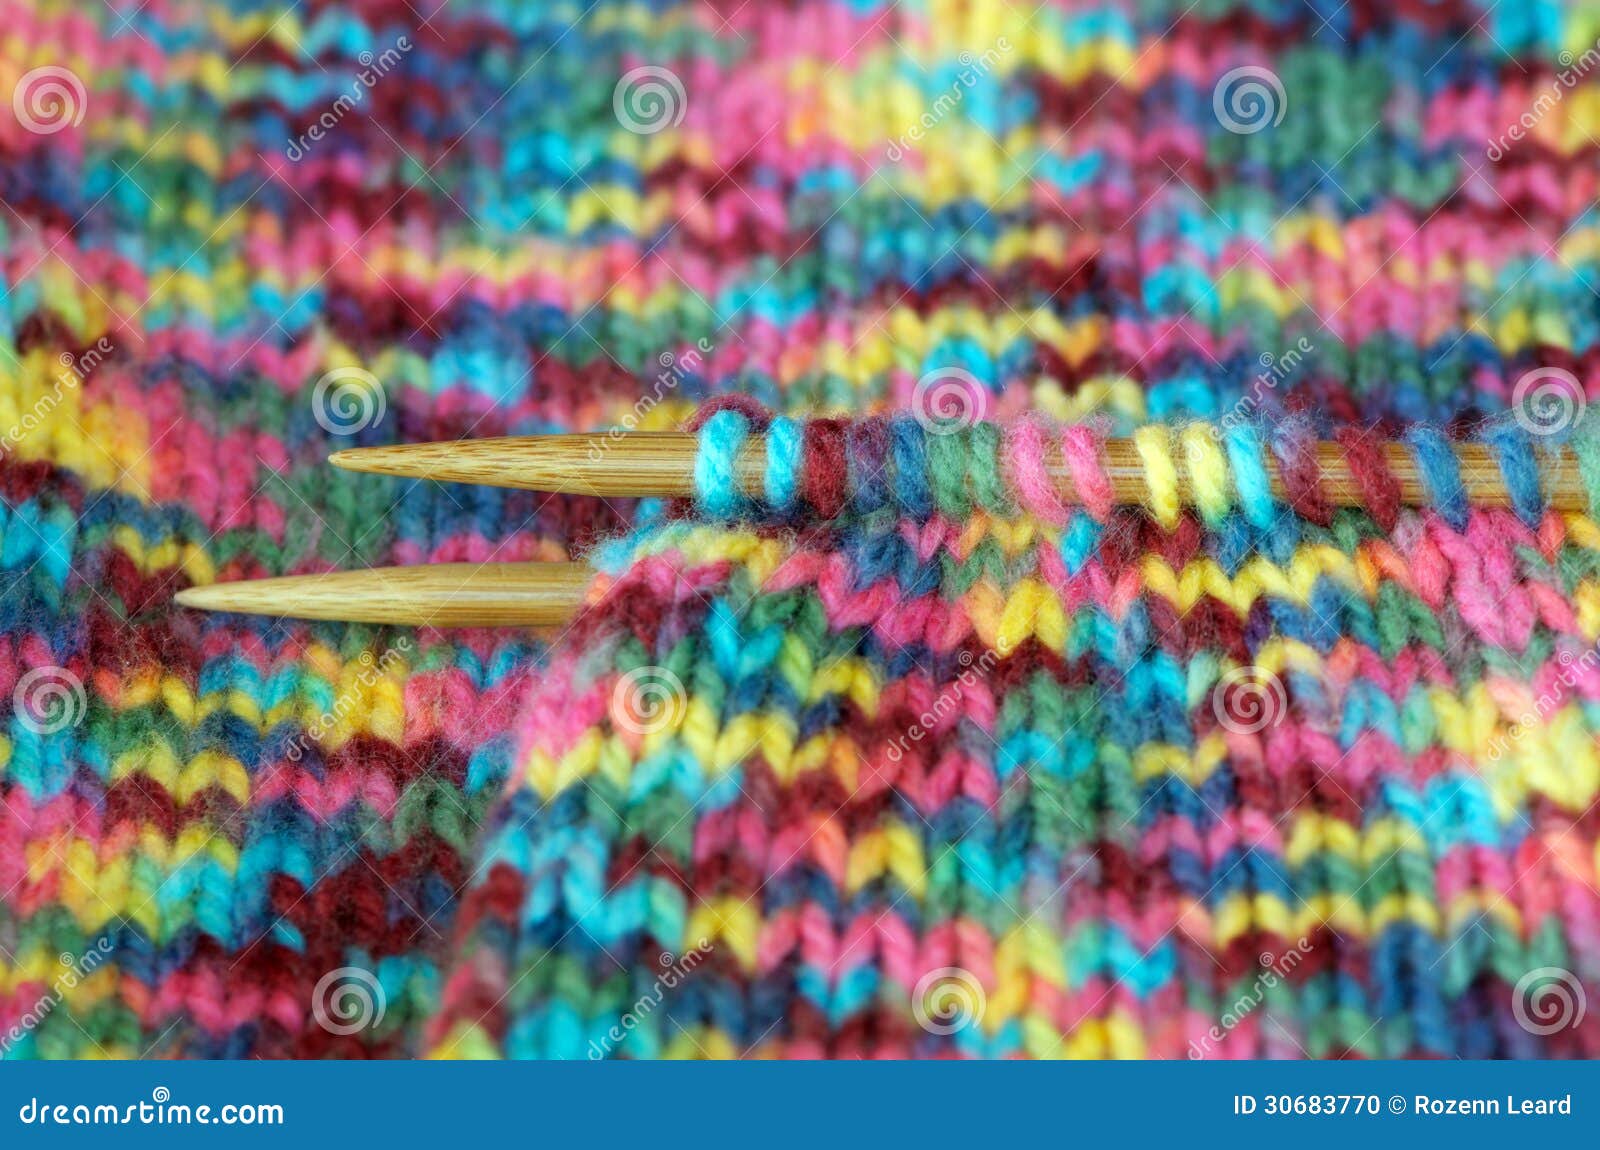 Knitting stock photo. Image of haberdashery, needles - 30683770